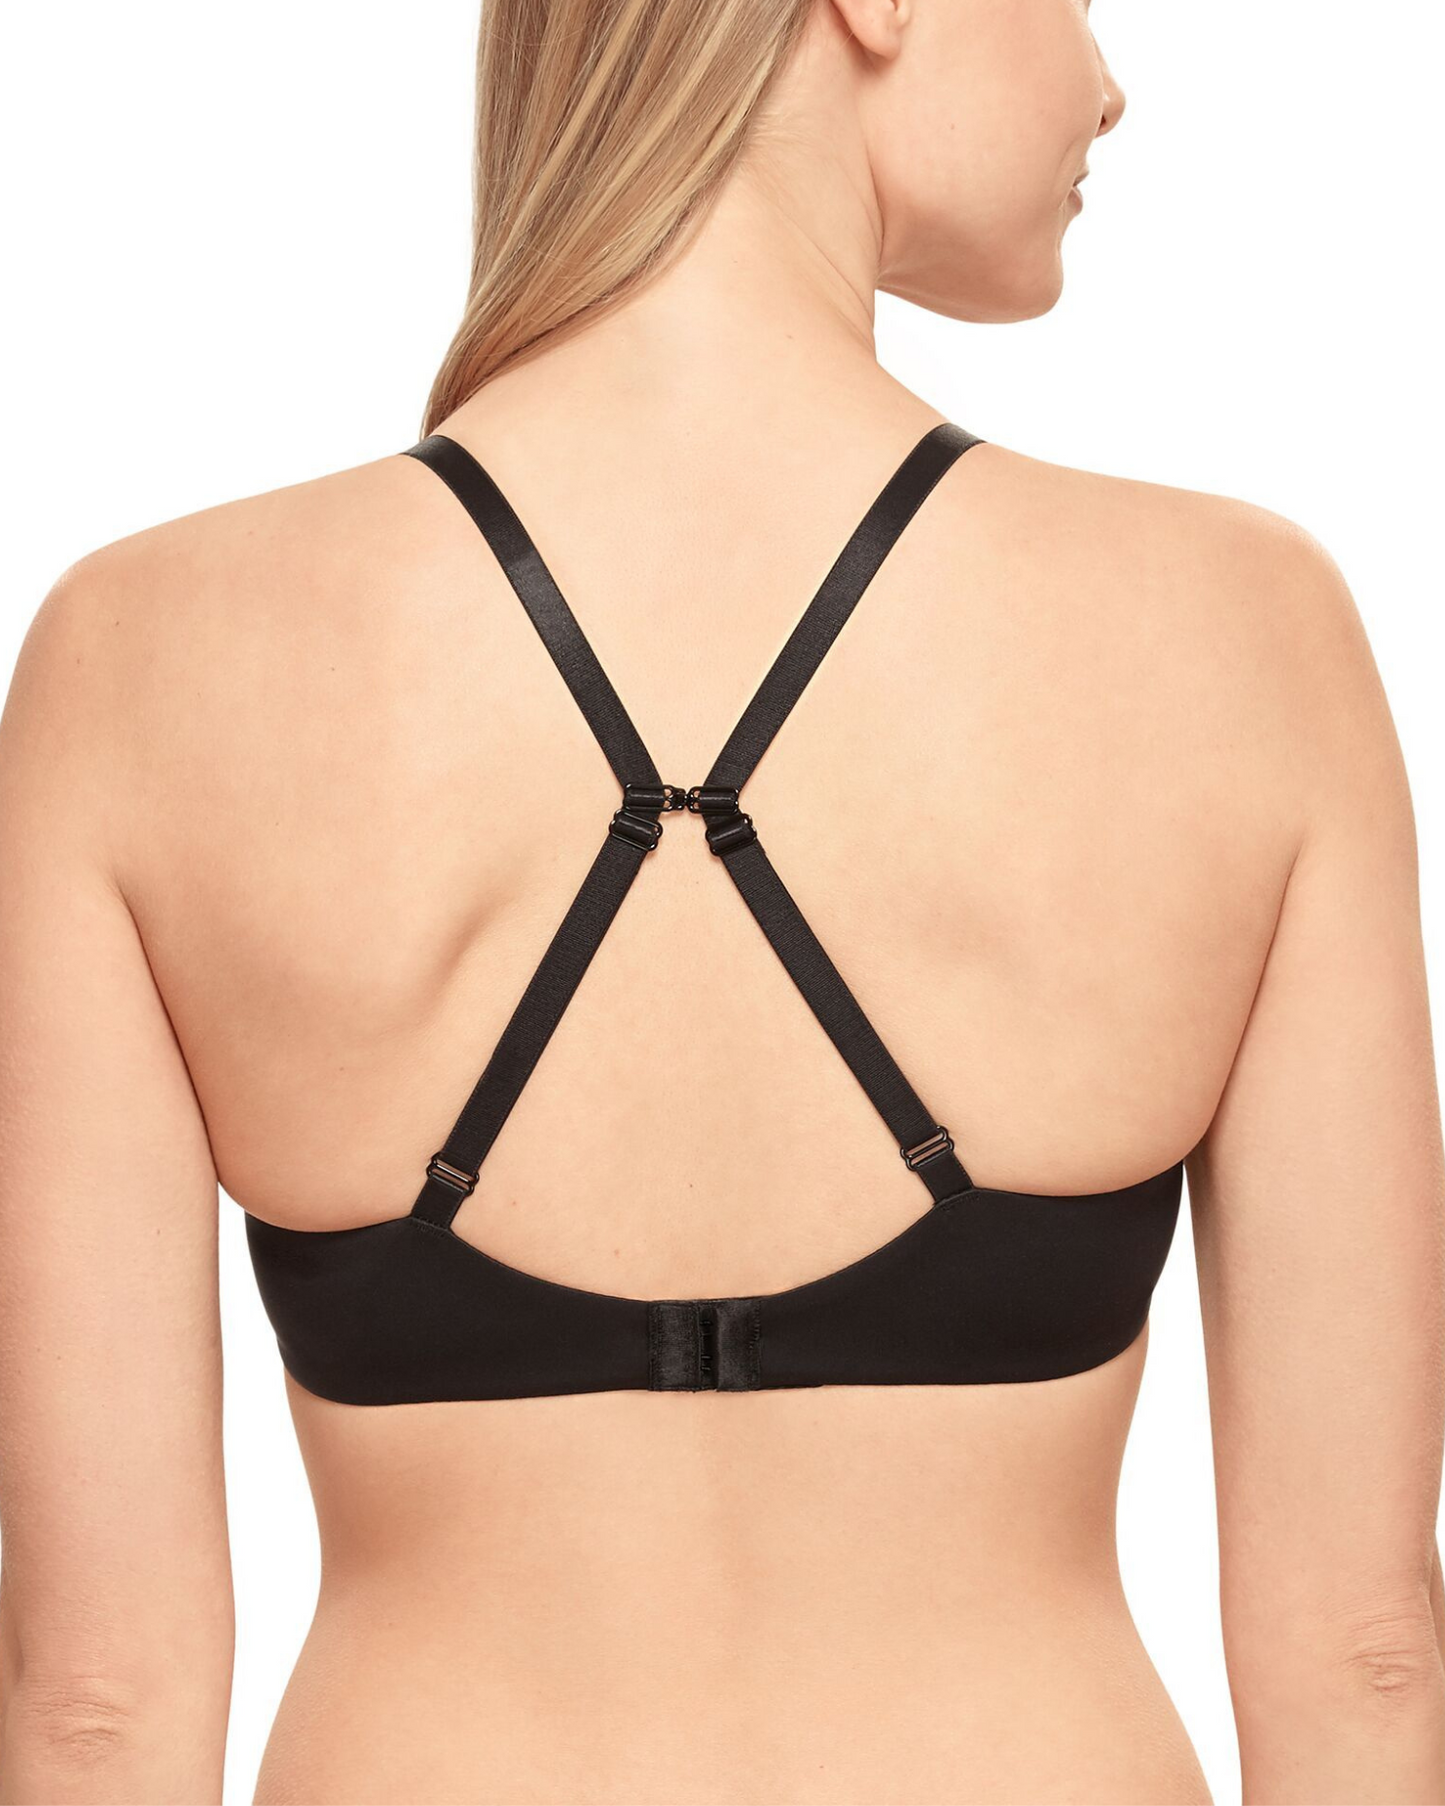 Model wearing a molded underwire t-shirt bra in black